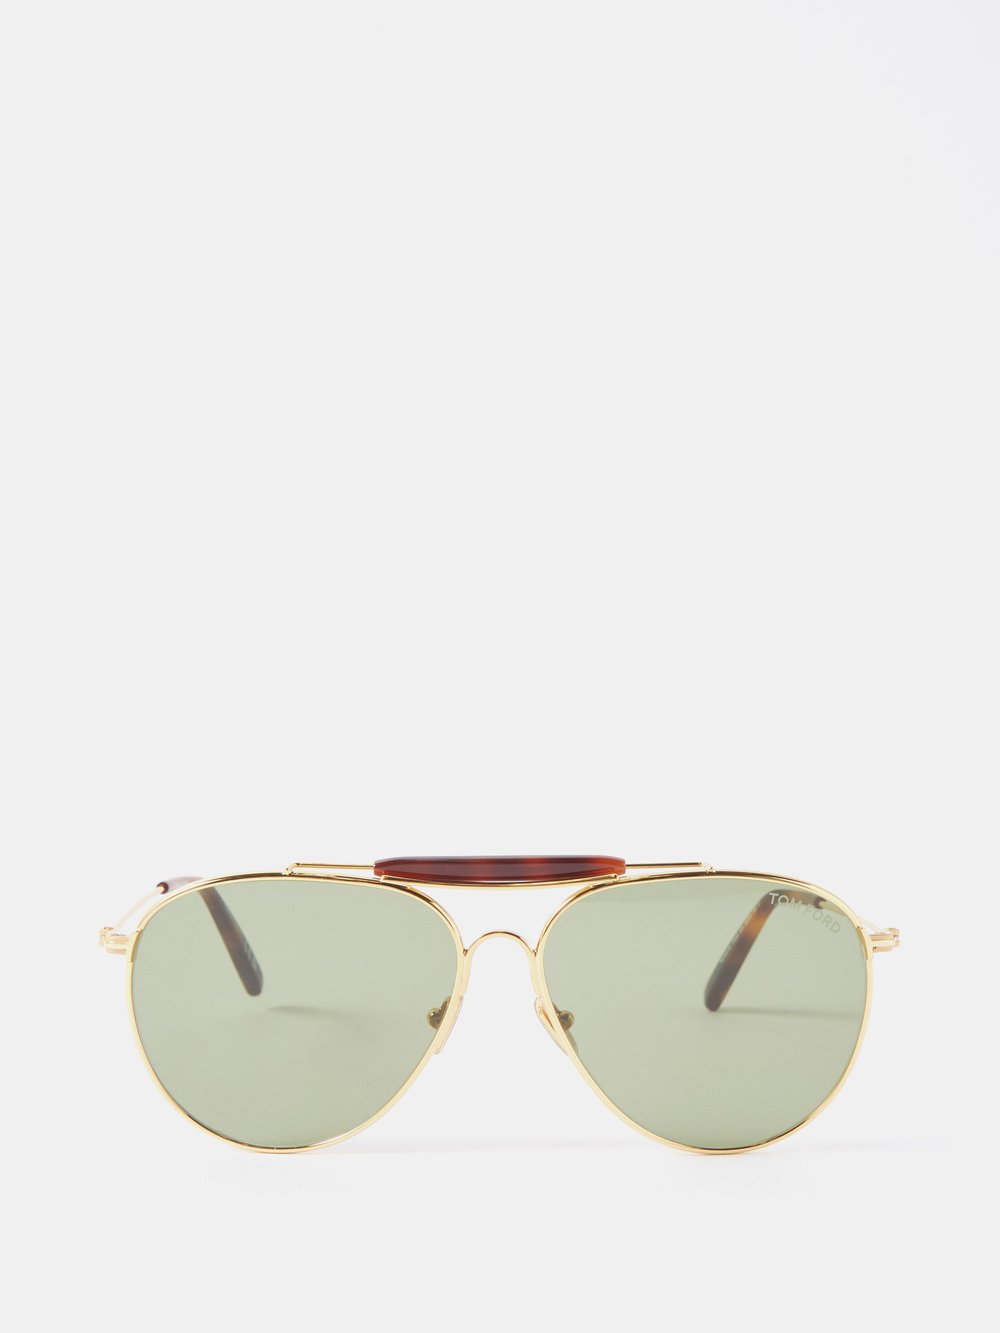 цена Солнцезащитные очки-авиаторы raphael в металлической оправе Tom Ford, золото